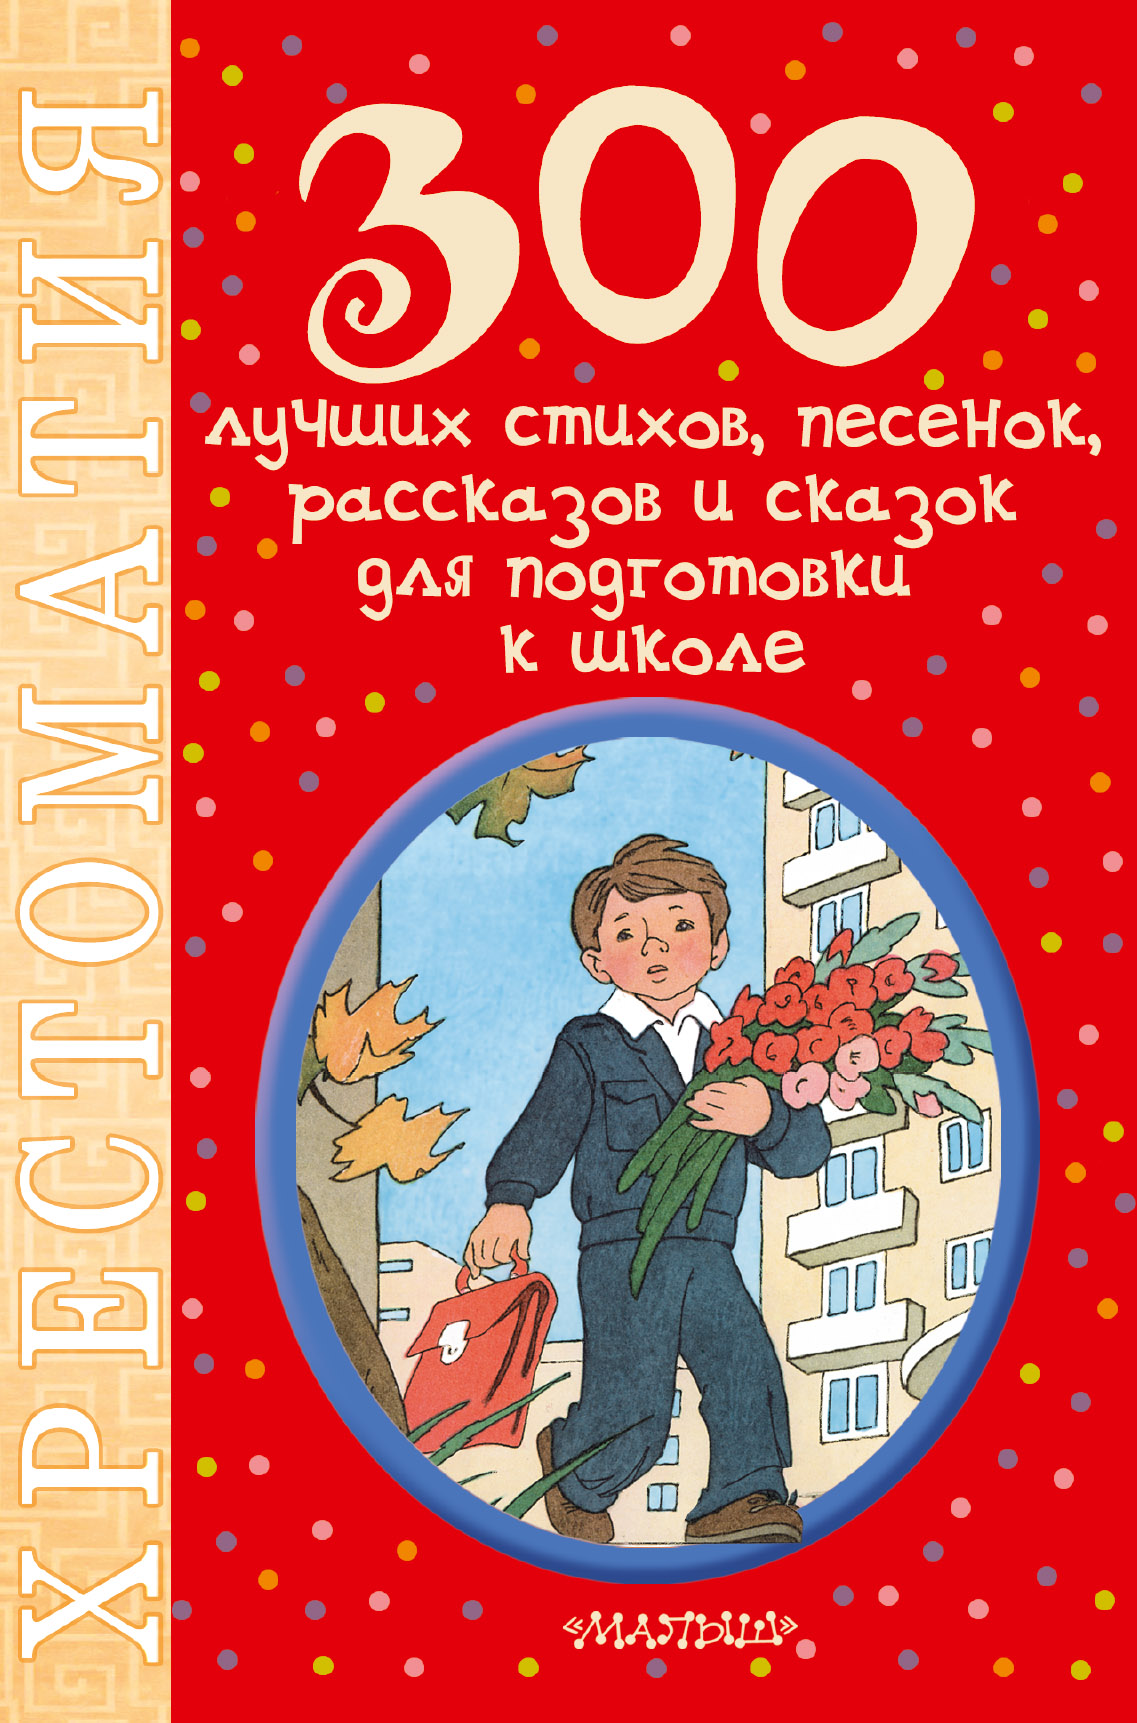 Маршак Самуил Яковлевич 300 лучших стихов, песенок, рассказов и сказок для подготовки к школе